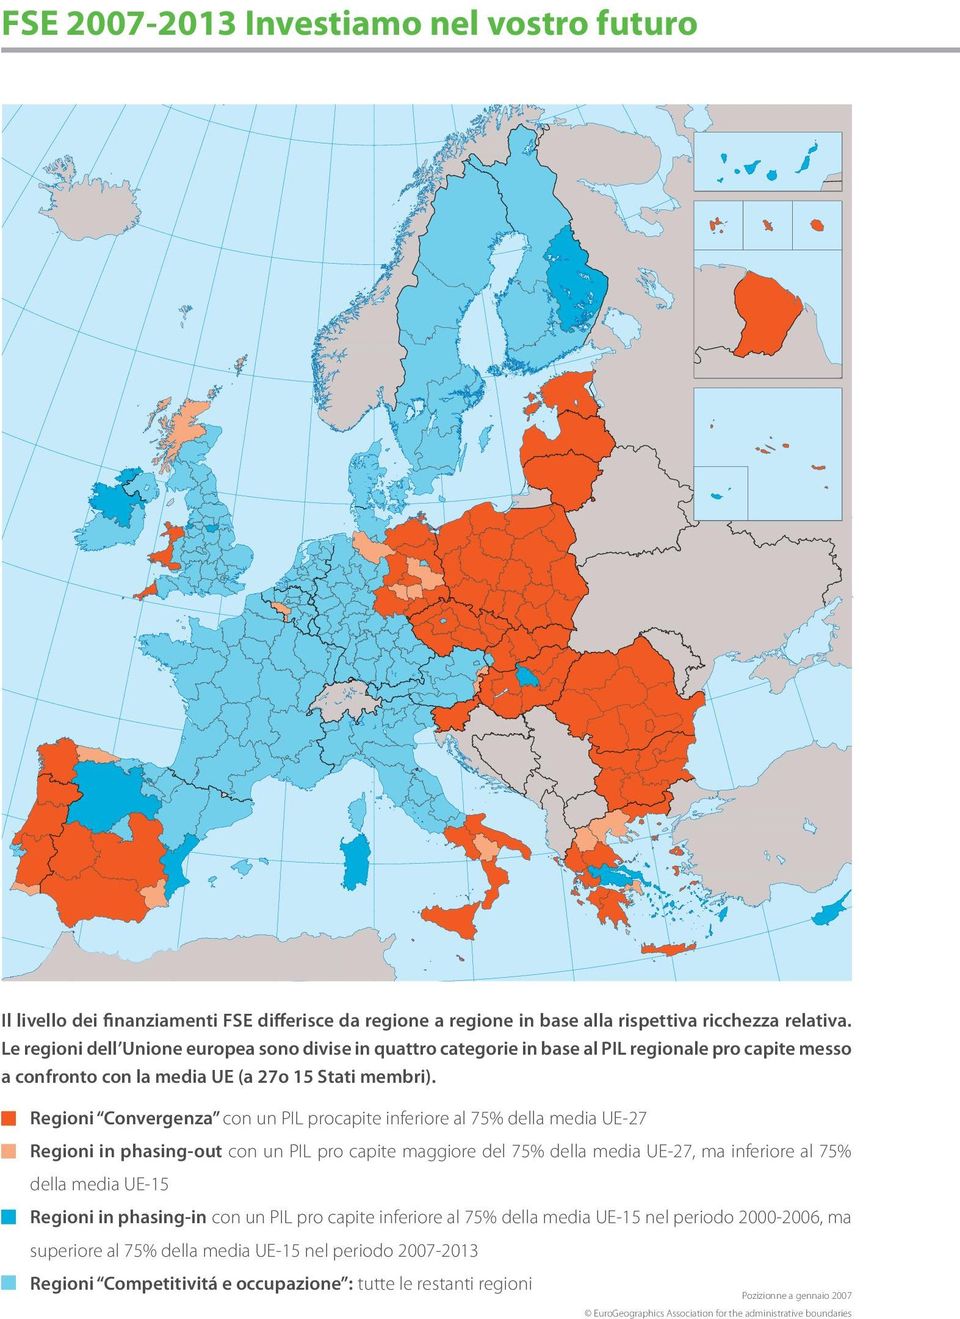 Regioni Convergenza con un PIL procapite inferiore al 75% della media UE-27 Regioni in phasing-out con un PIL pro capite maggiore del 75% della media UE-27, ma inferiore al 75% della media UE-15